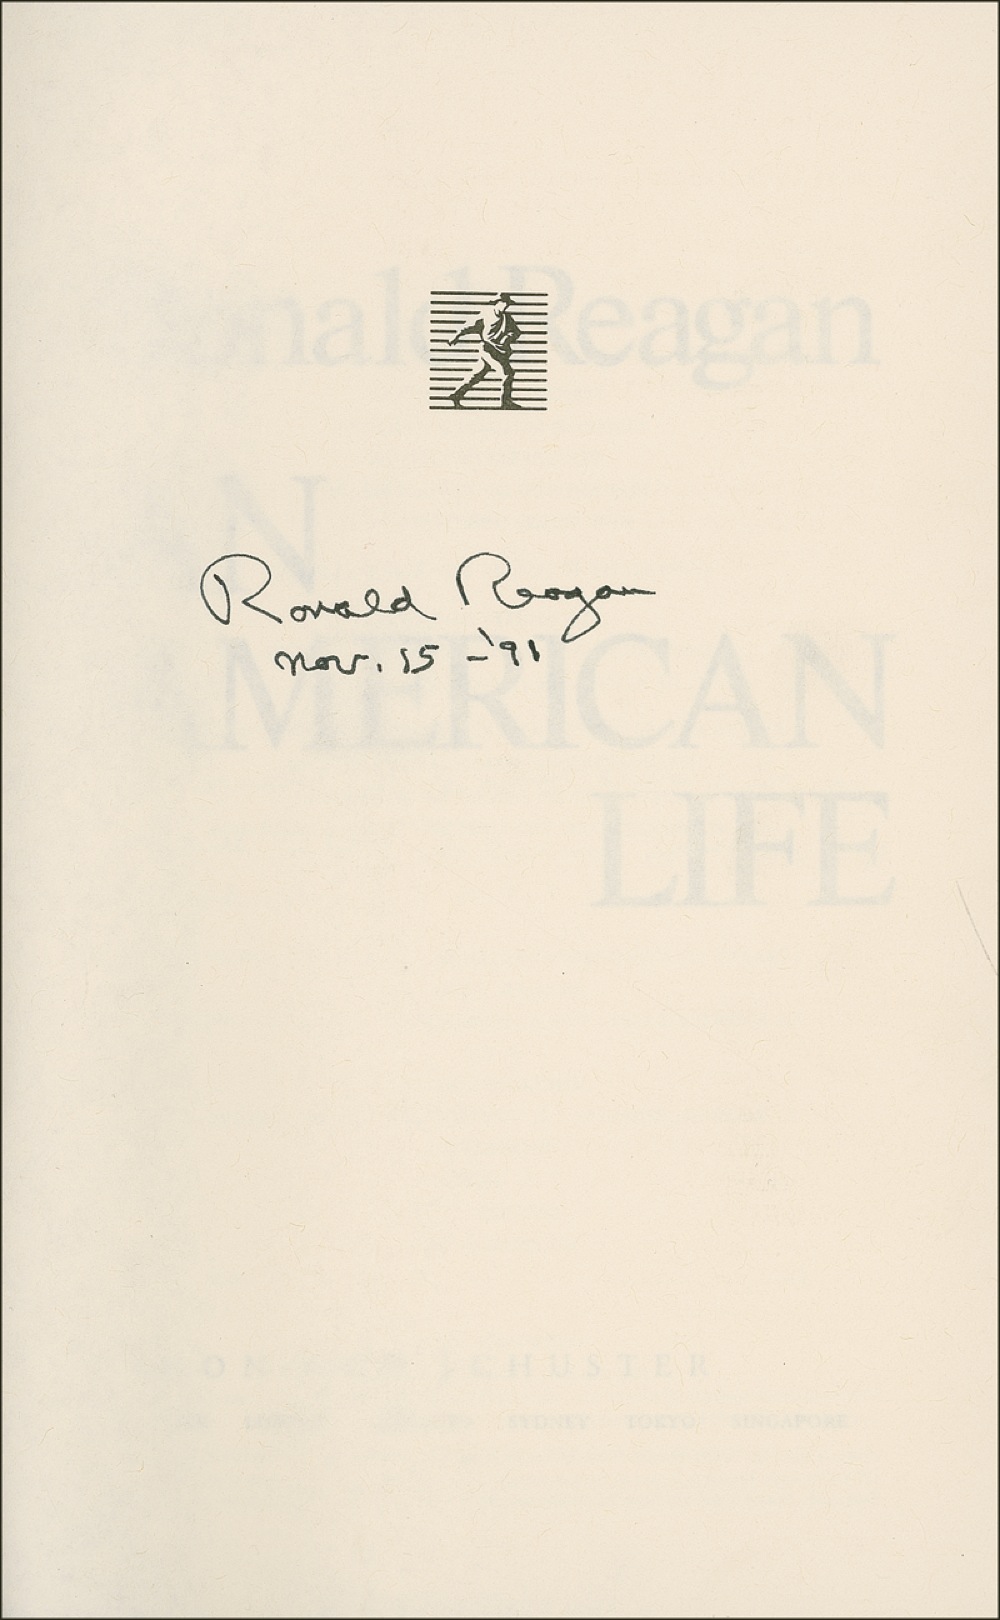 Lot #108 Ronald Reagan